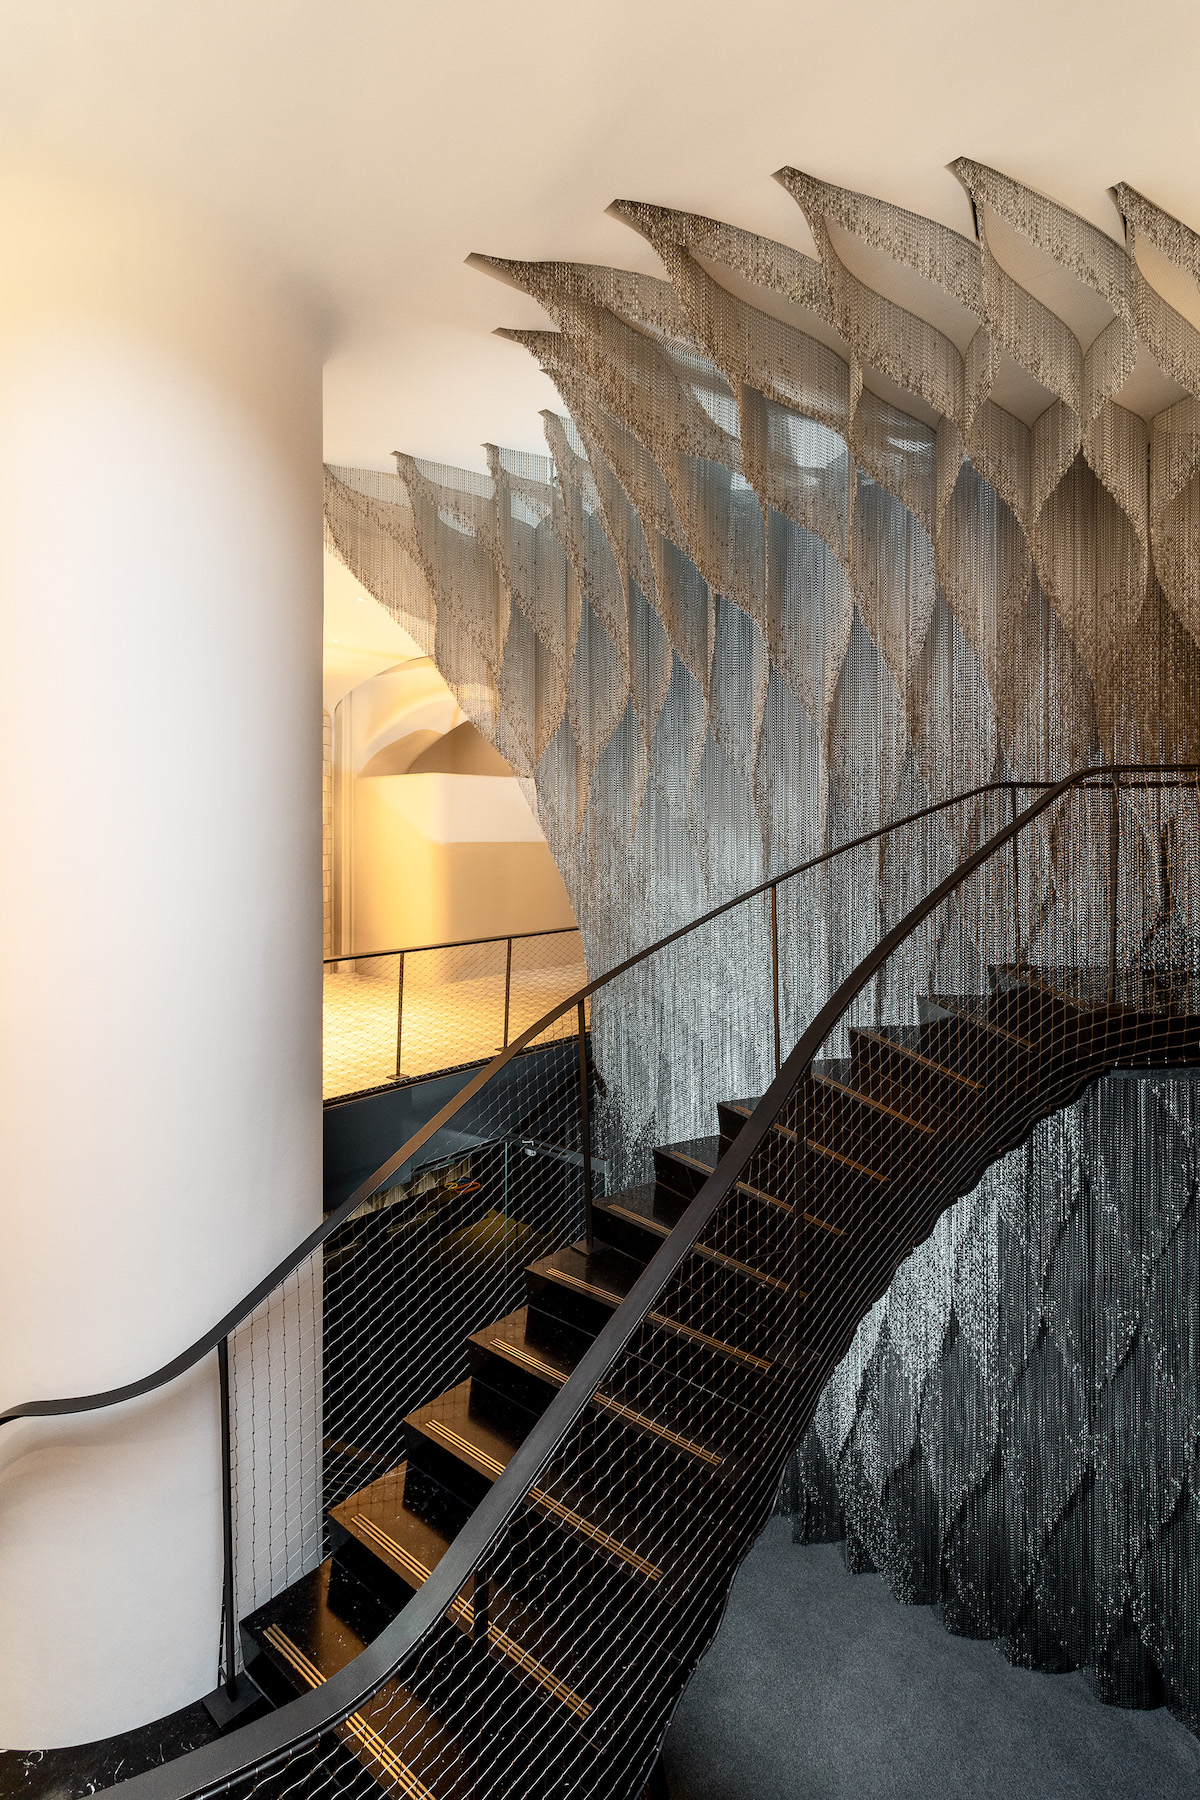 Détail de l’escalier en aluminium Kengo Kuma dans la Casa Batlló de Gaudi, capturée par Jordi Anguera